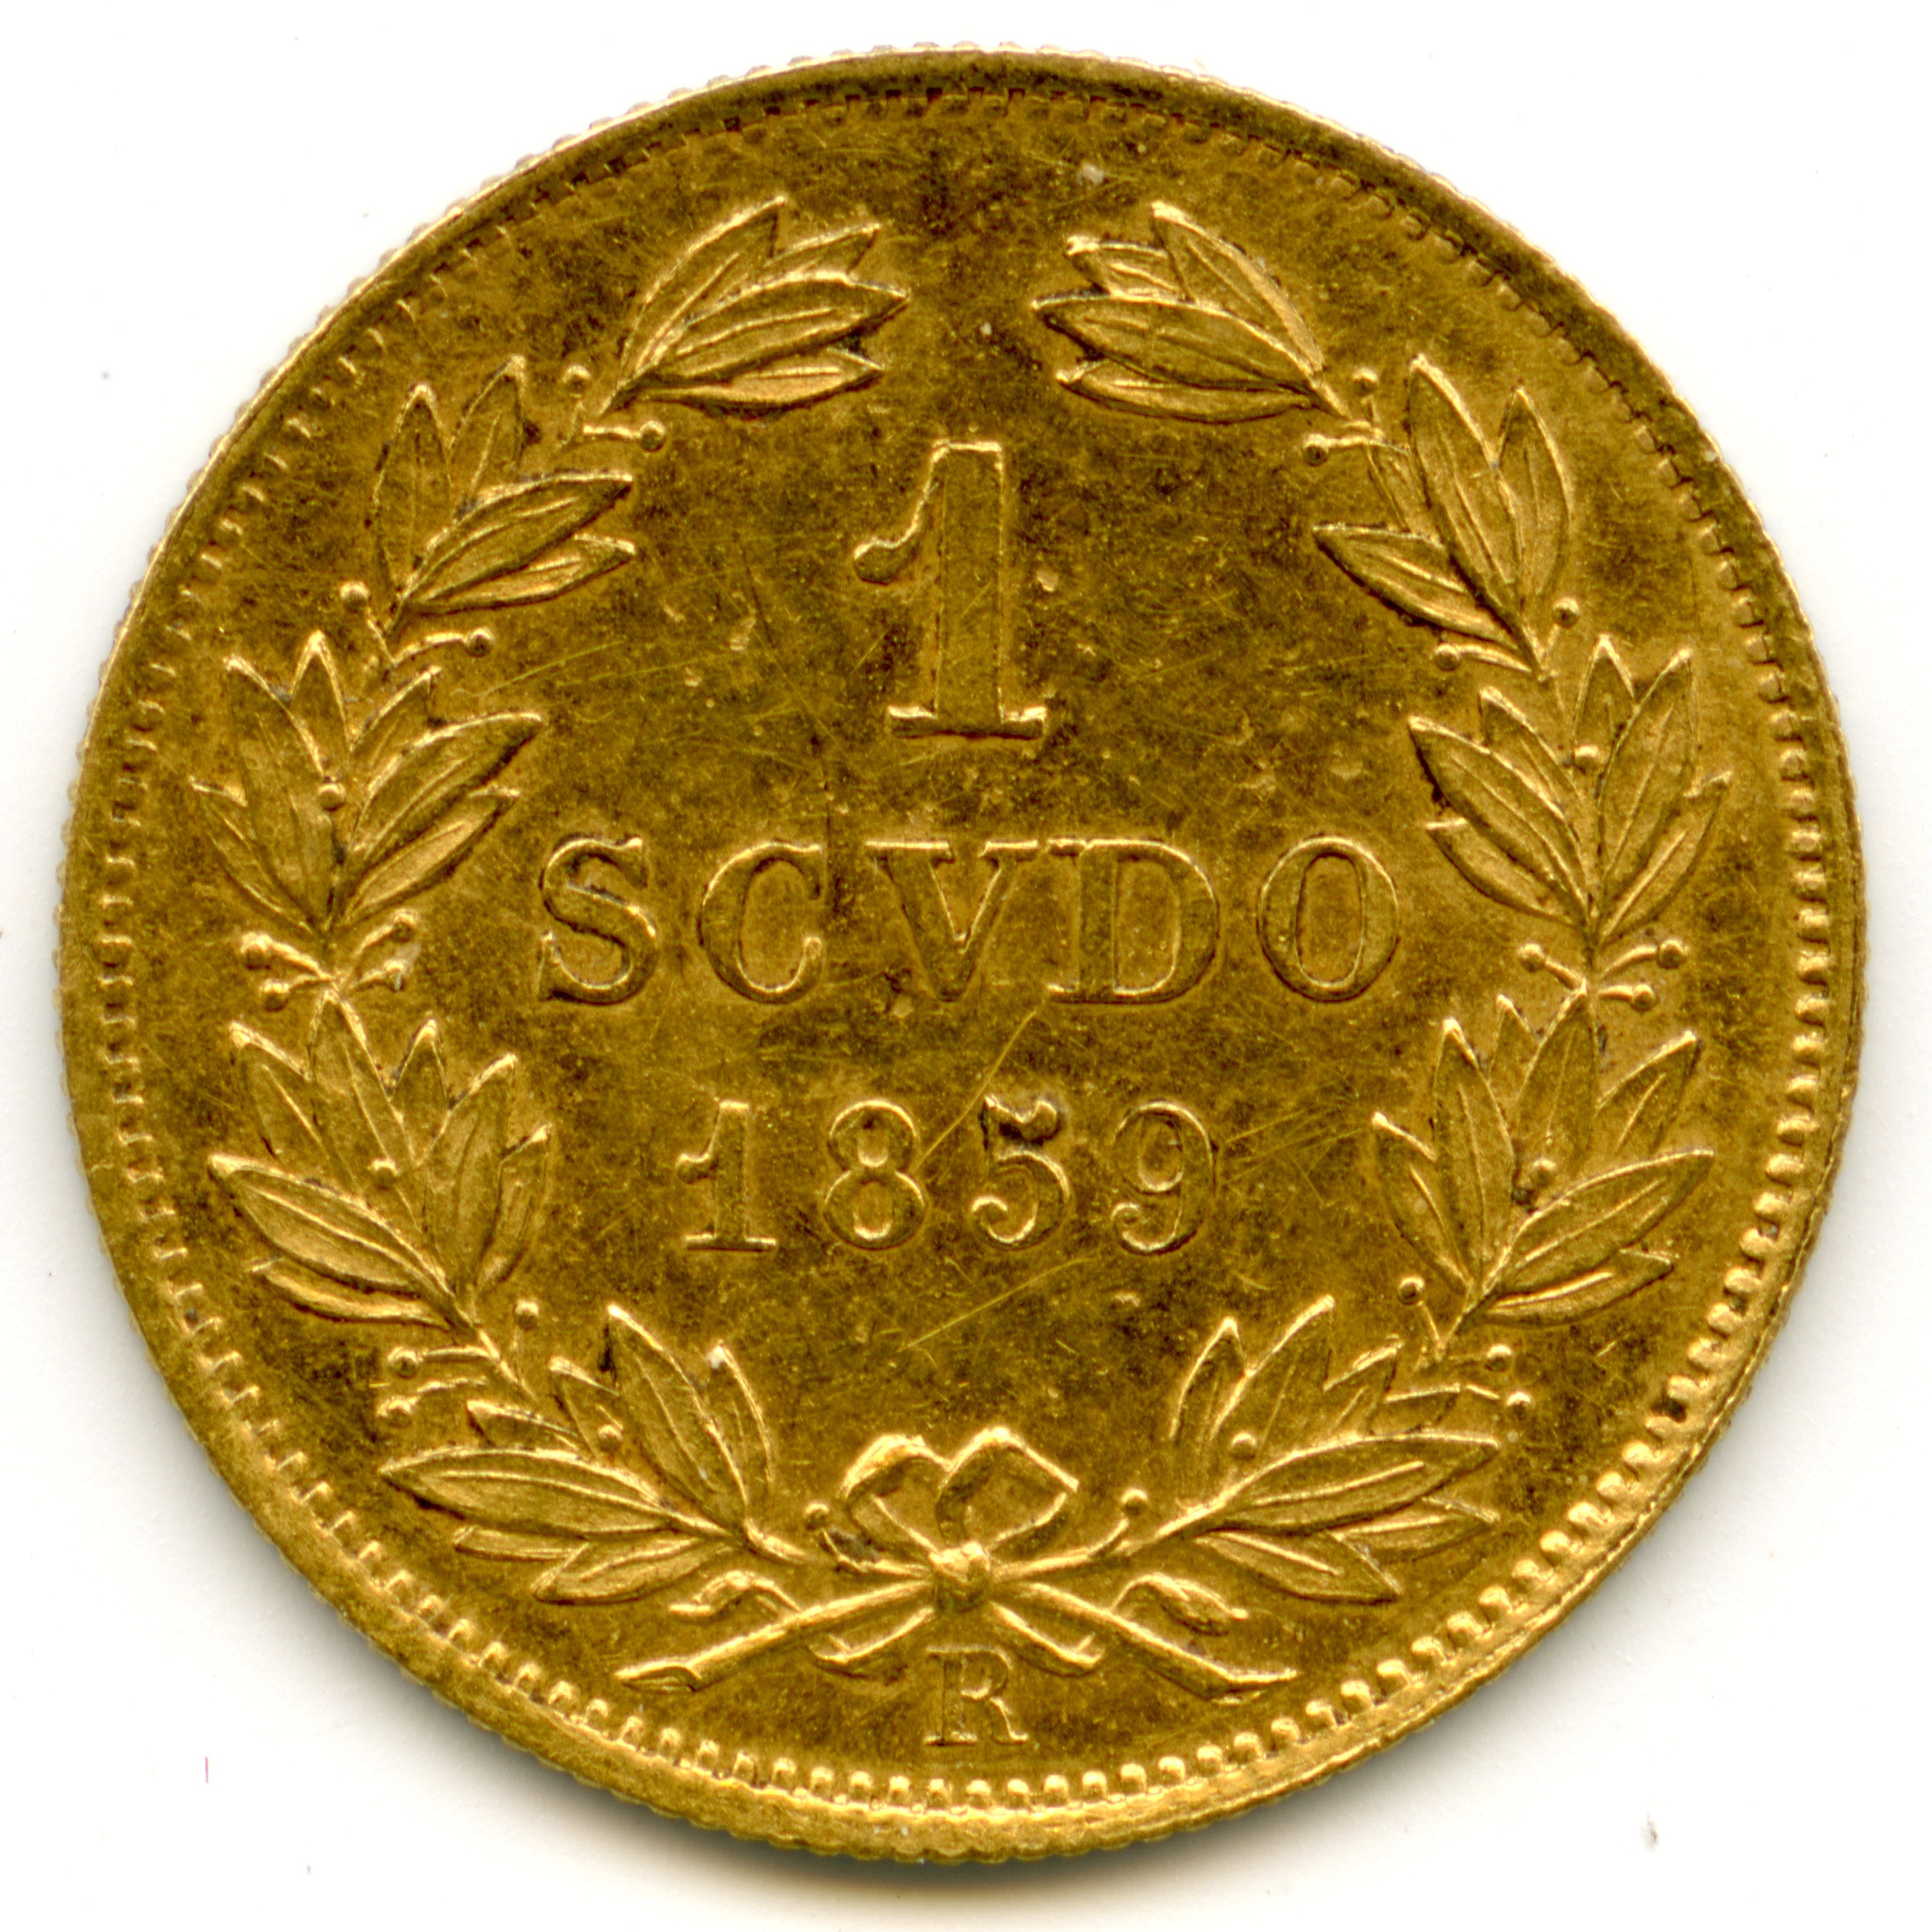 Italie - 1 Scudo - 1859 revers